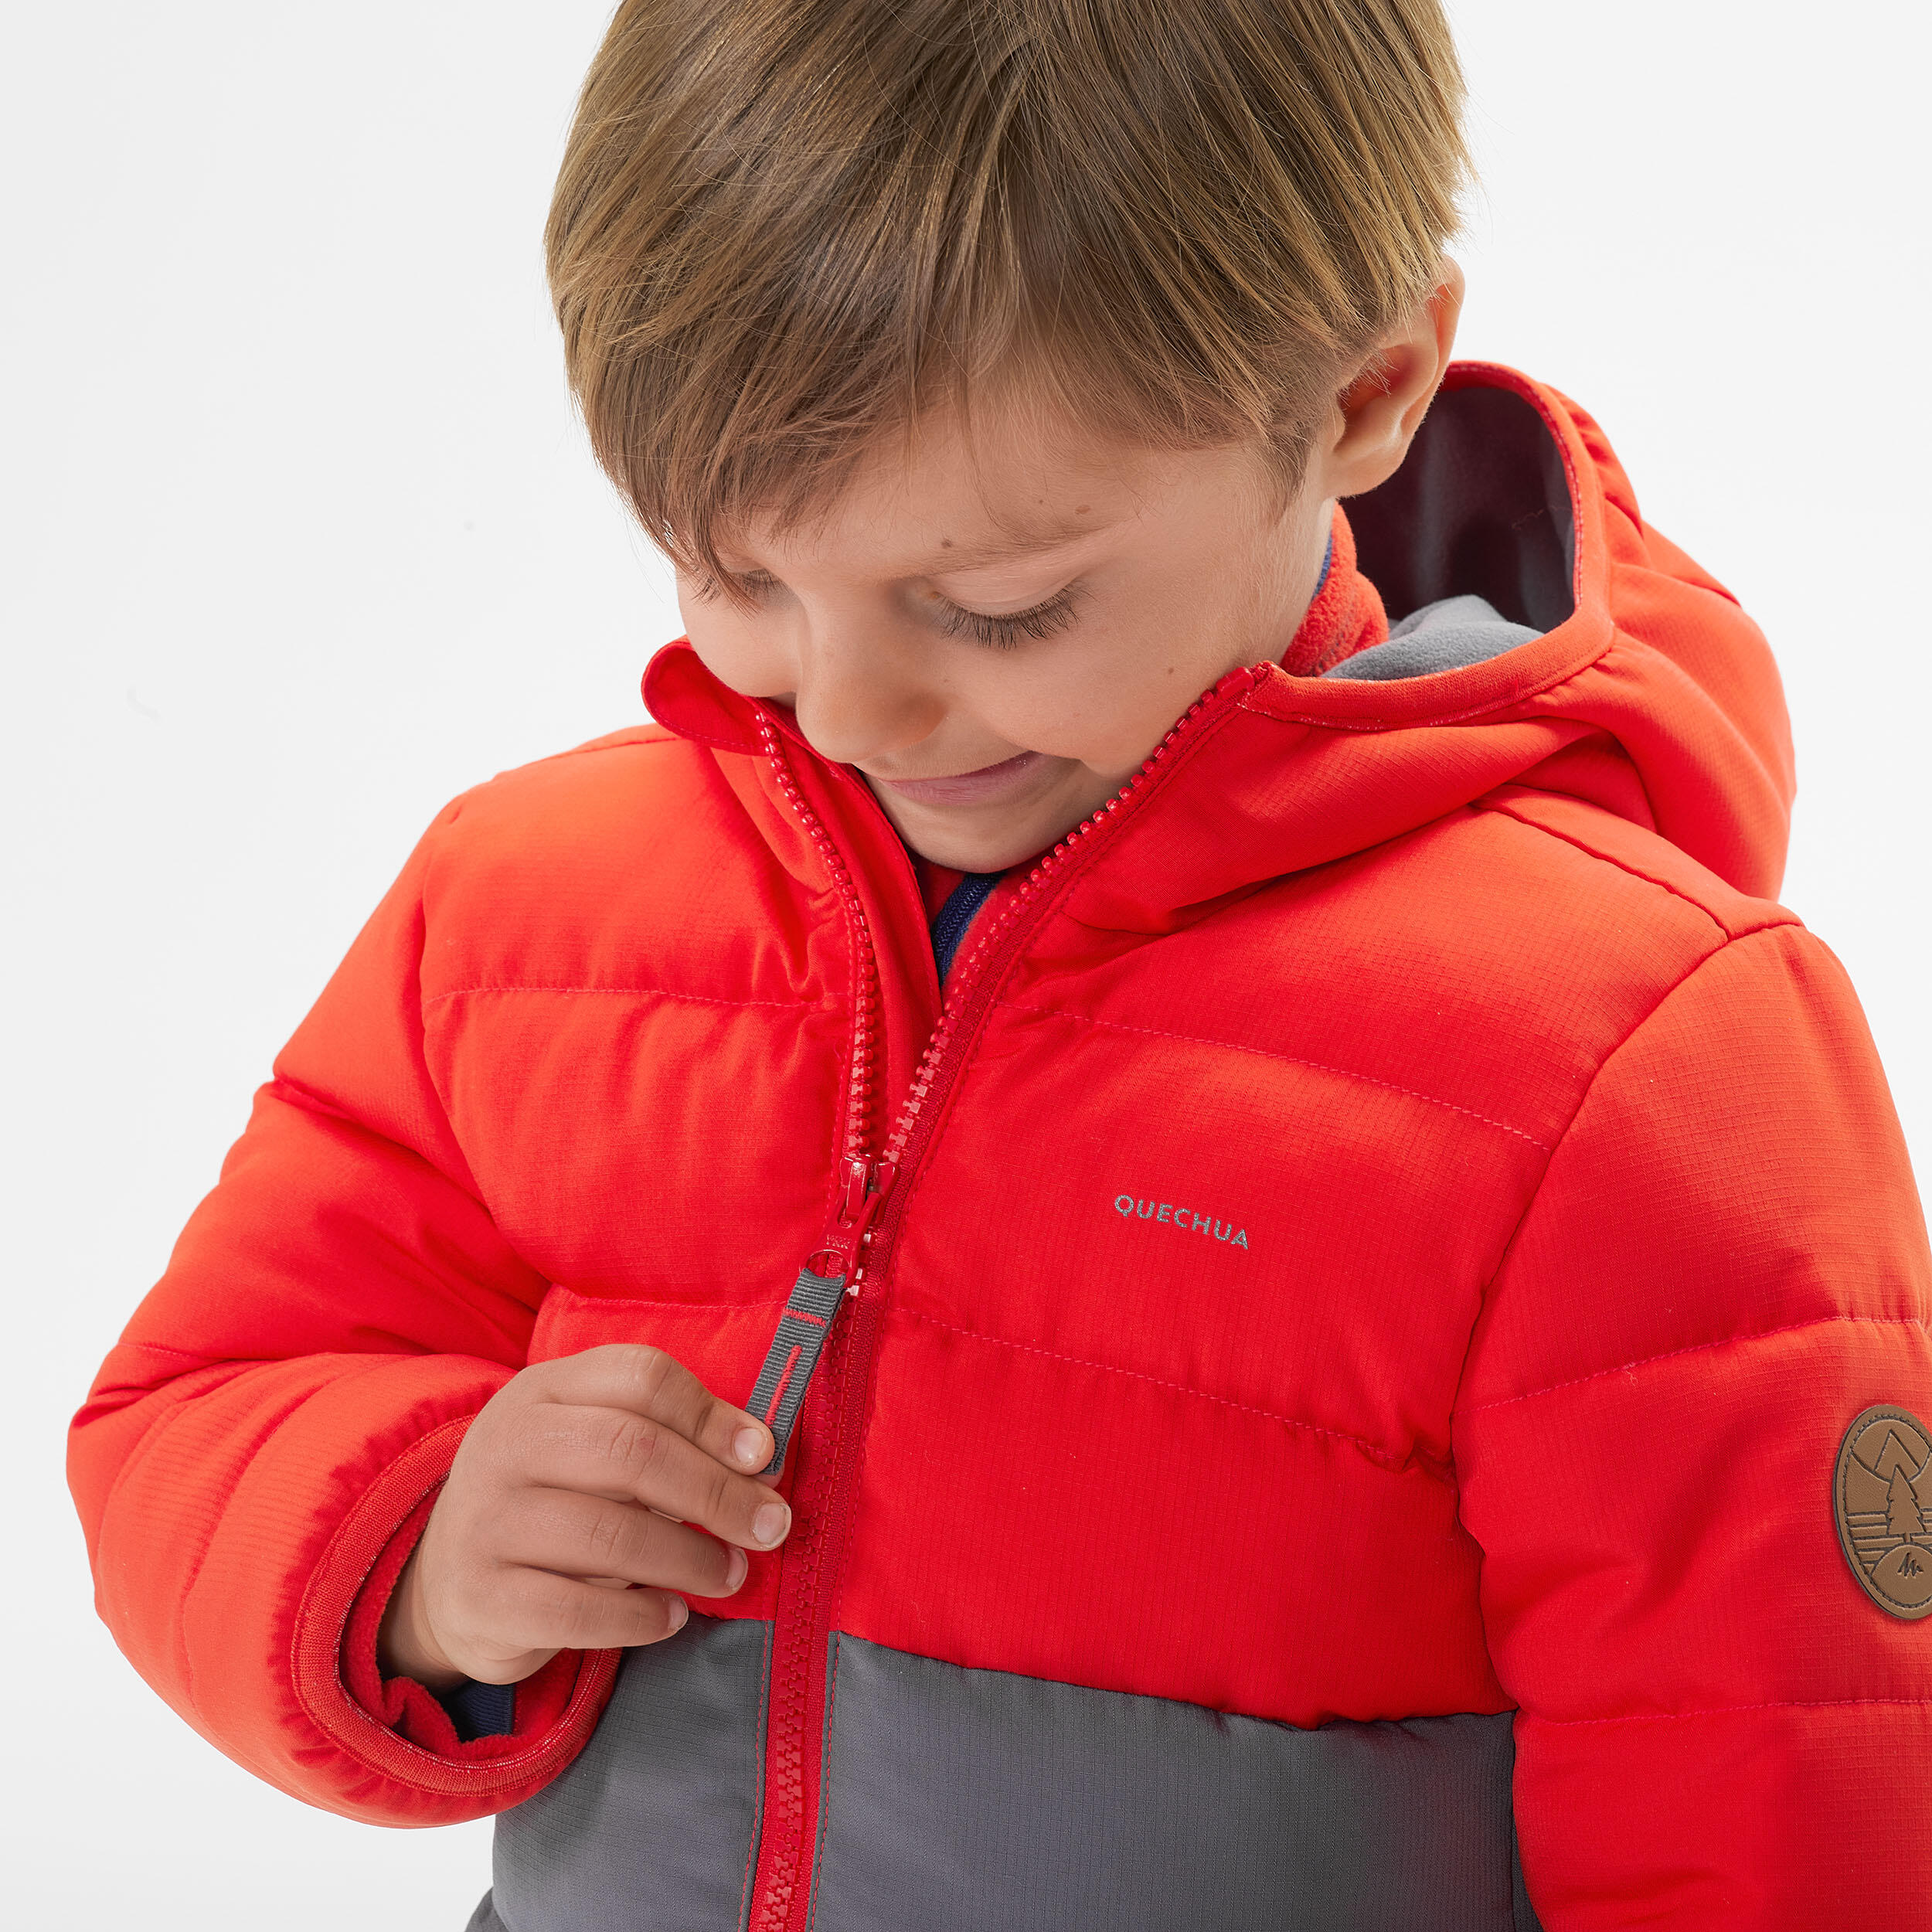 Kids’ Hiking Padded Jacket - Aged 2-6 - Orange and Grey 6/8